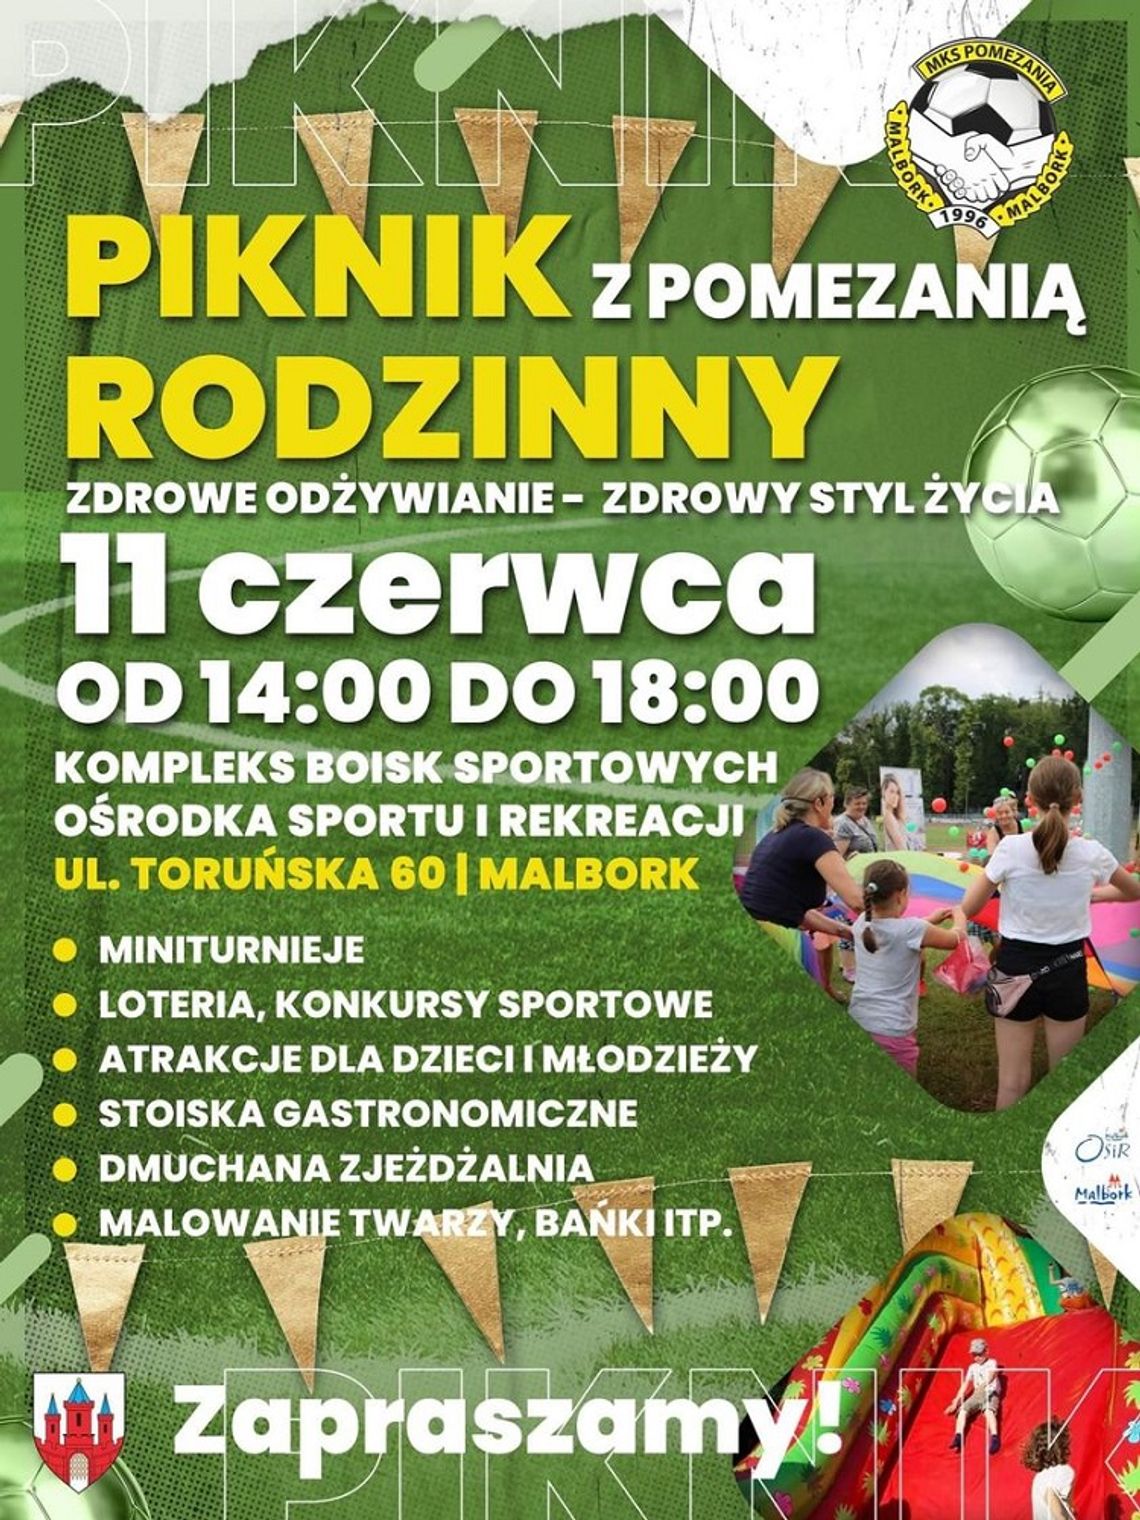  Piknik Rodzinny z "Pomezanią" w Malborku.